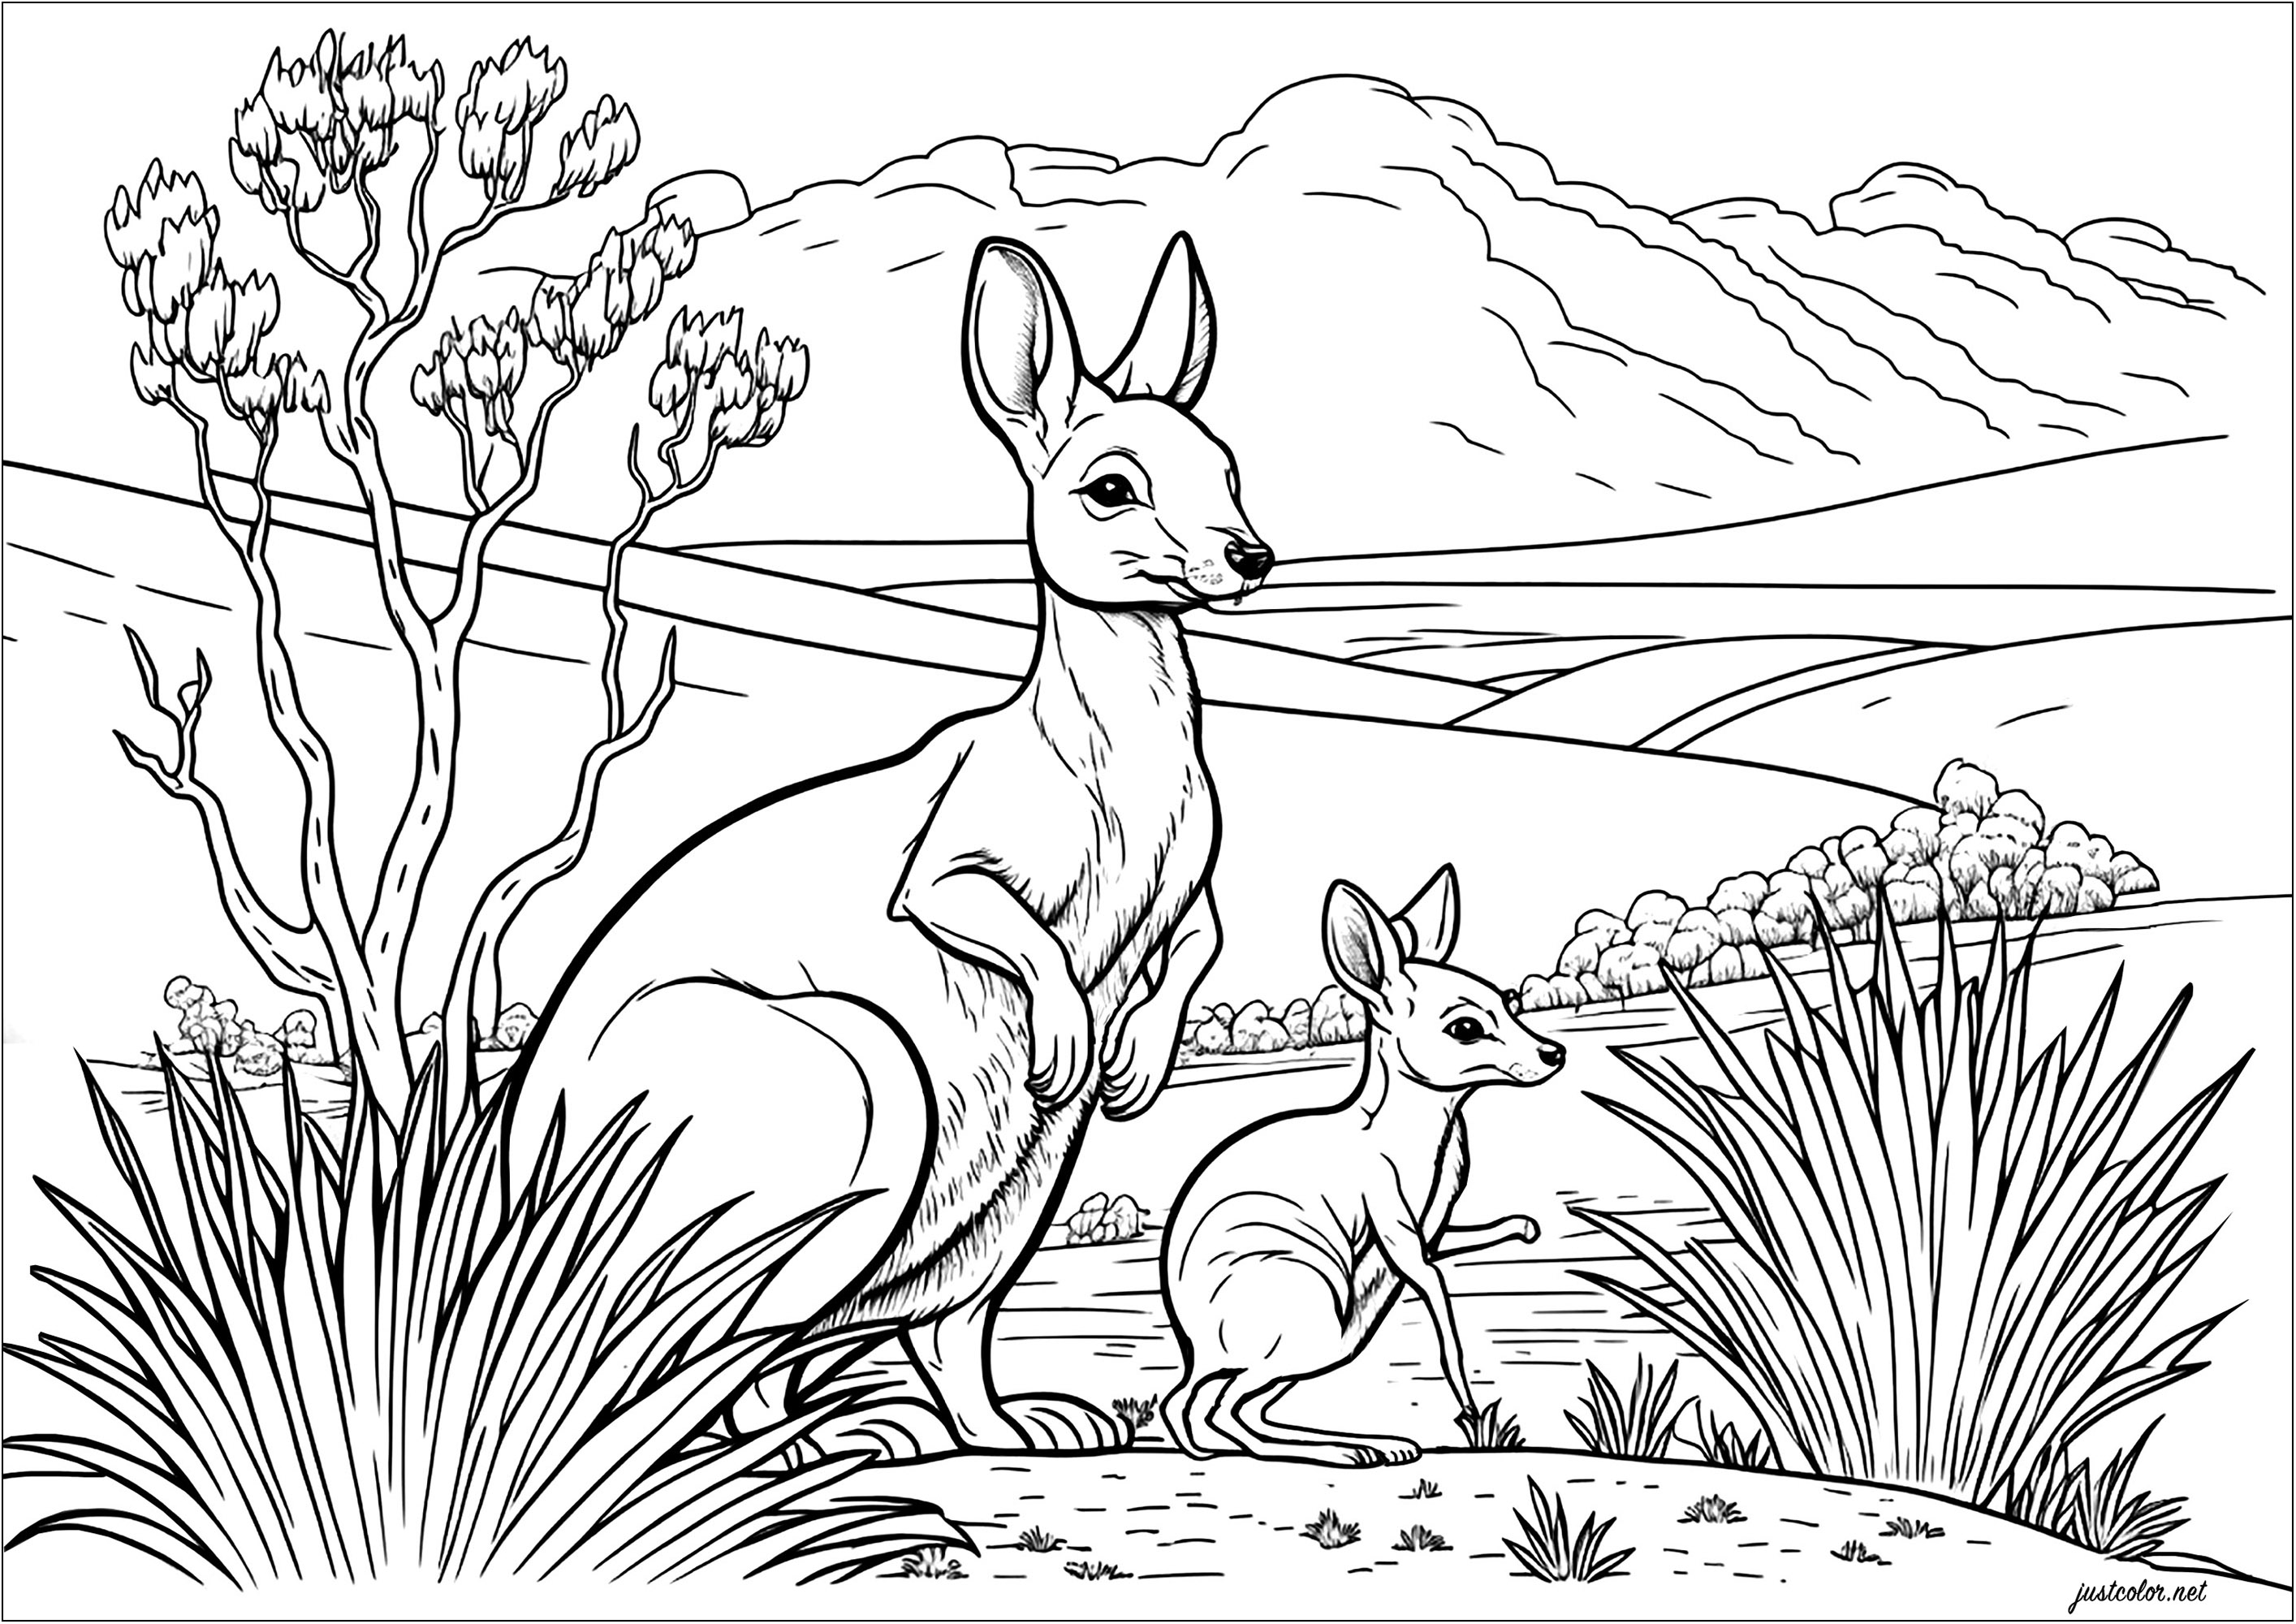 Coloriez cette mère kangourou et son petit. Explorez le paysage du désert australien avec des cactus et un ciel ensoleillé, en utilisant votre imagination pour donner vie à cette scène. Laissez votre créativité s'exprimer avec les couleurs et rejoignez l'aventure sautillante de ces deux kangourous, Artiste : IAsabelle